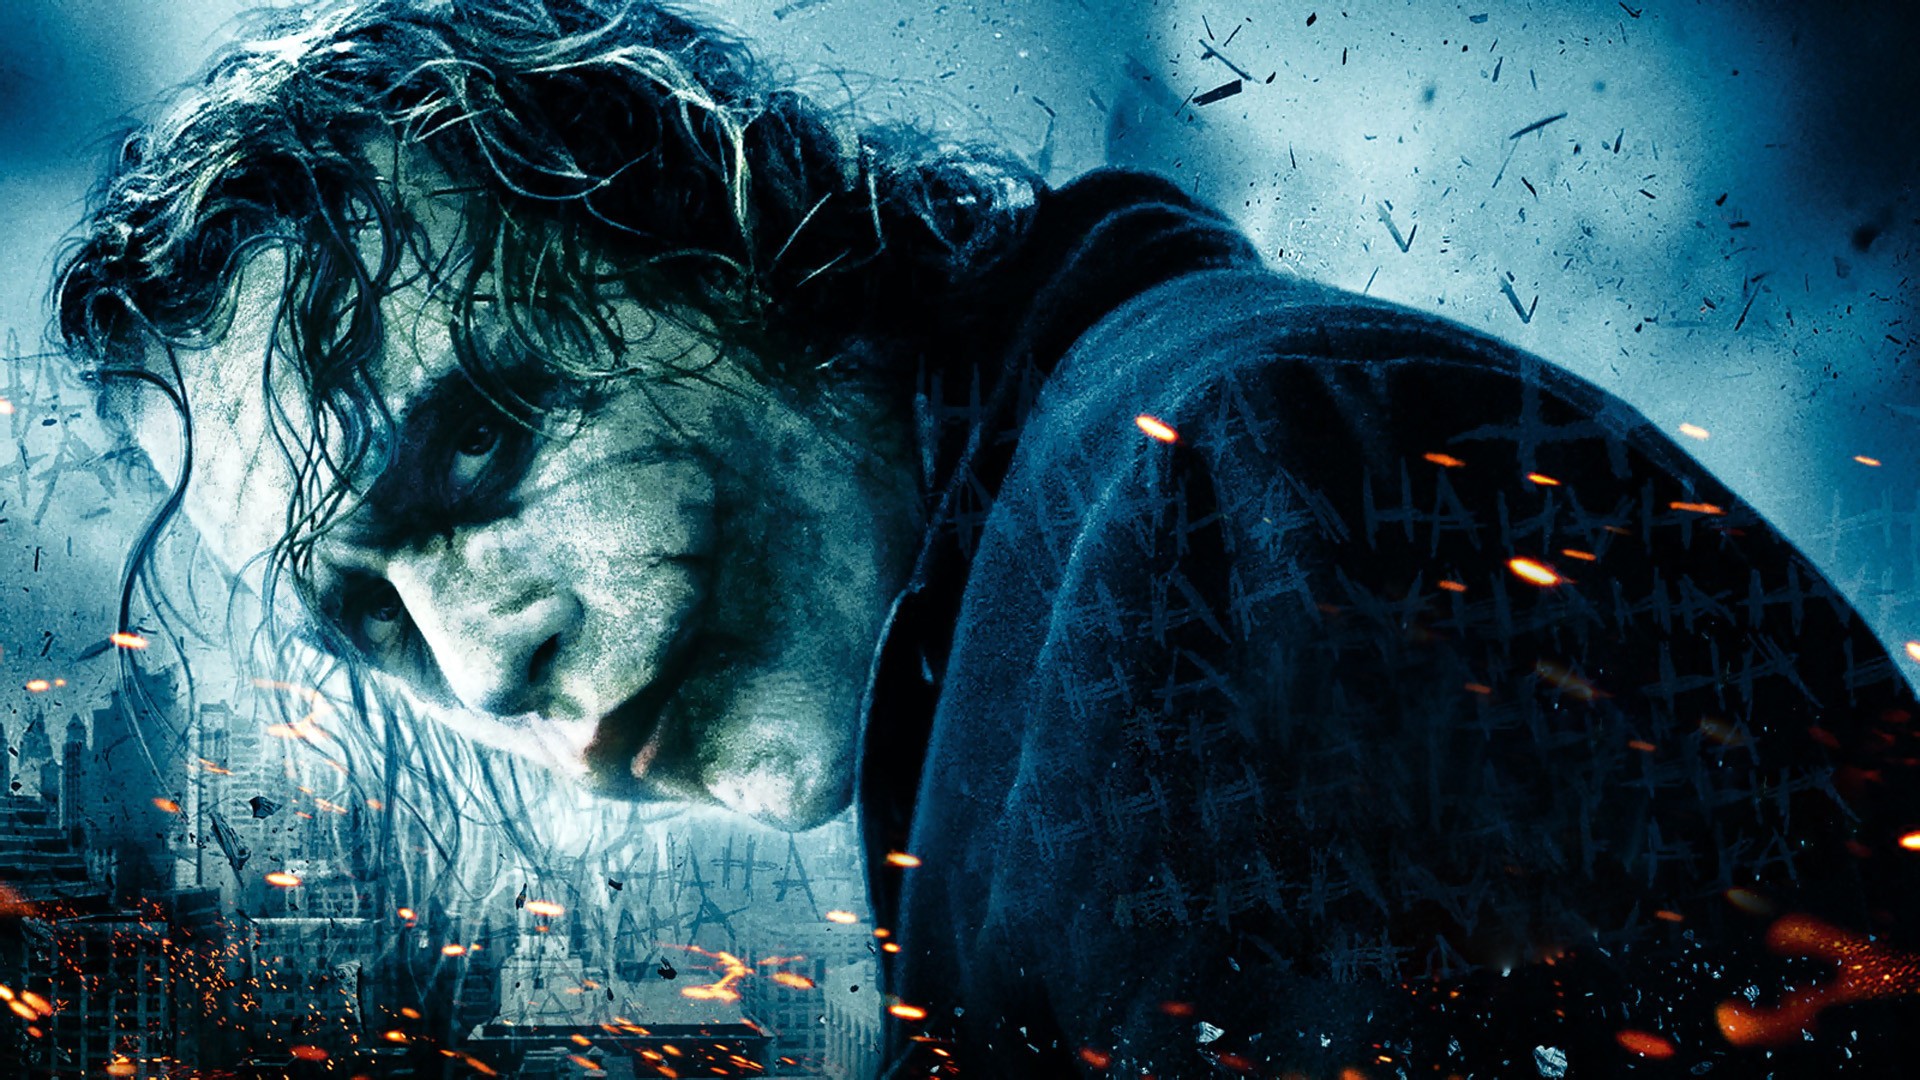 Joker The Dark Knight - HD Wallpaper 